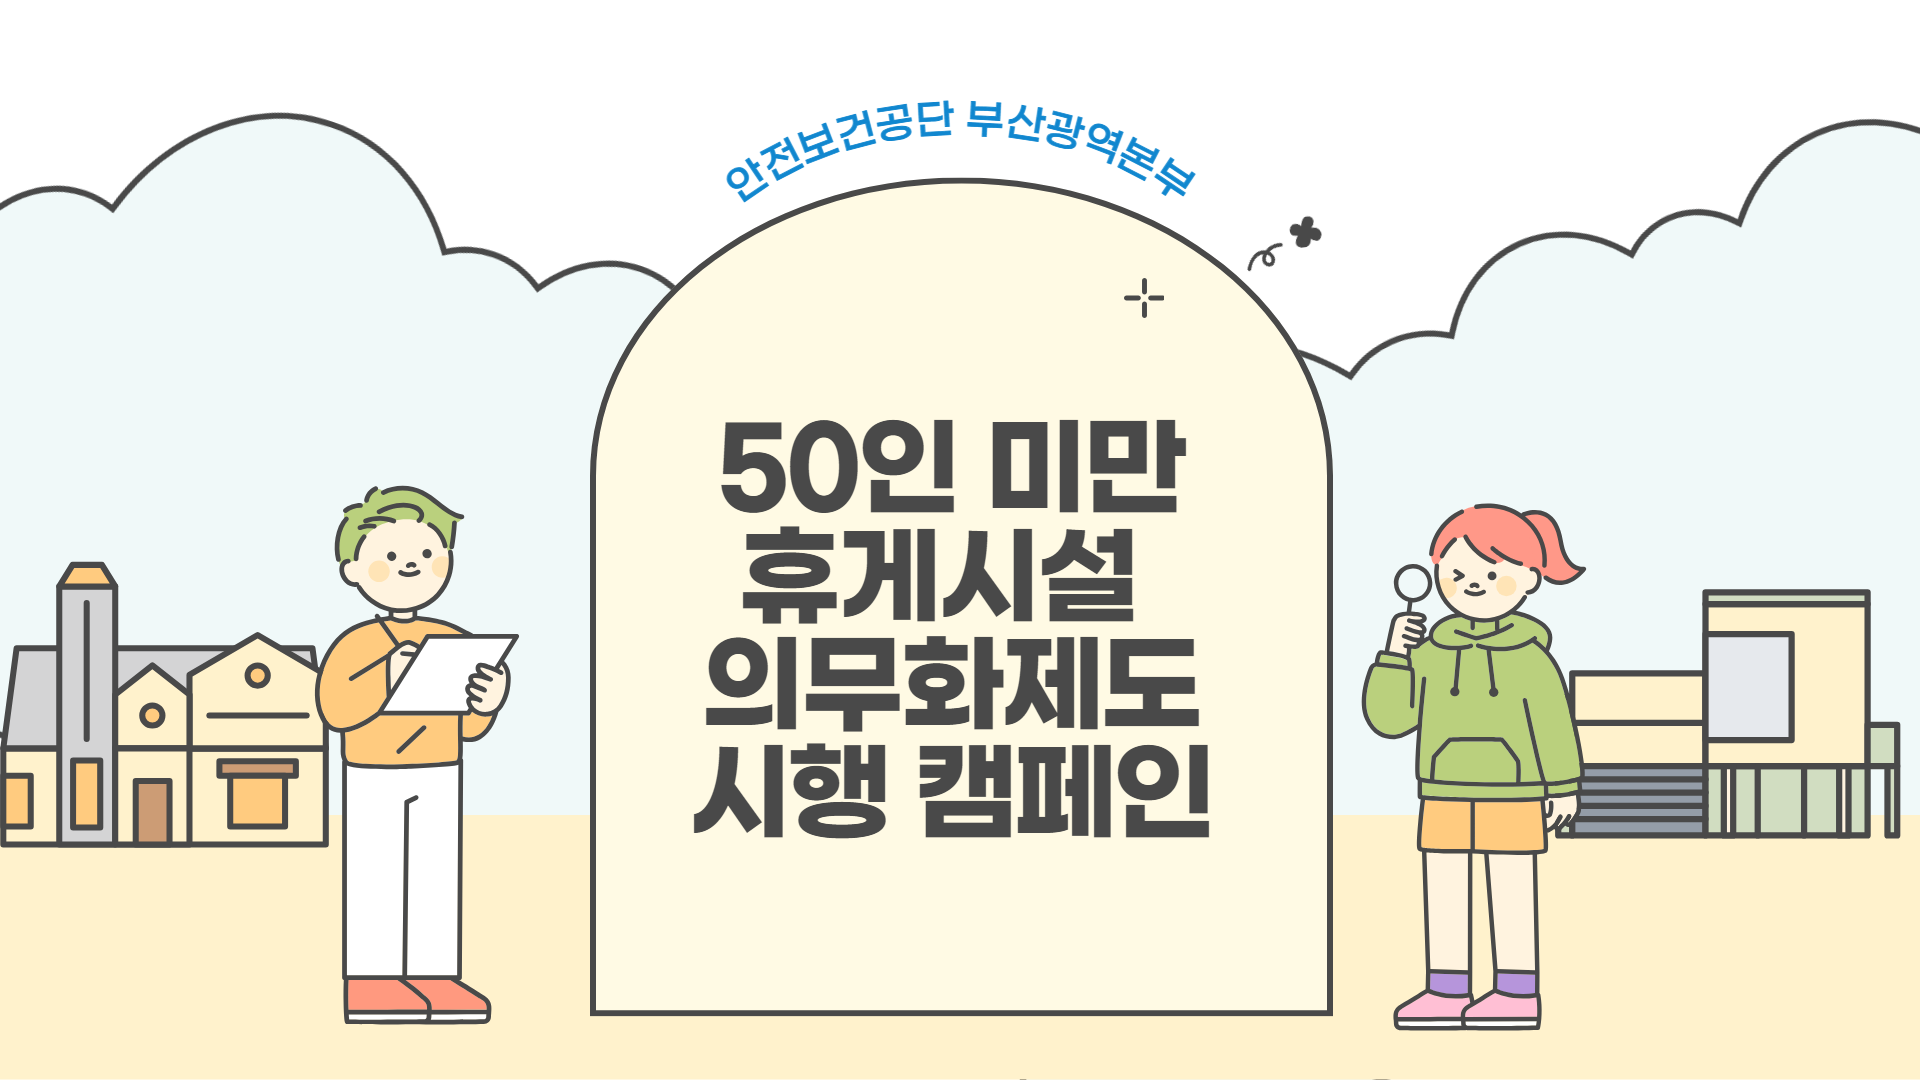 [부산] 50인 미만 휴게시설 의무화제도 시행 캠페인